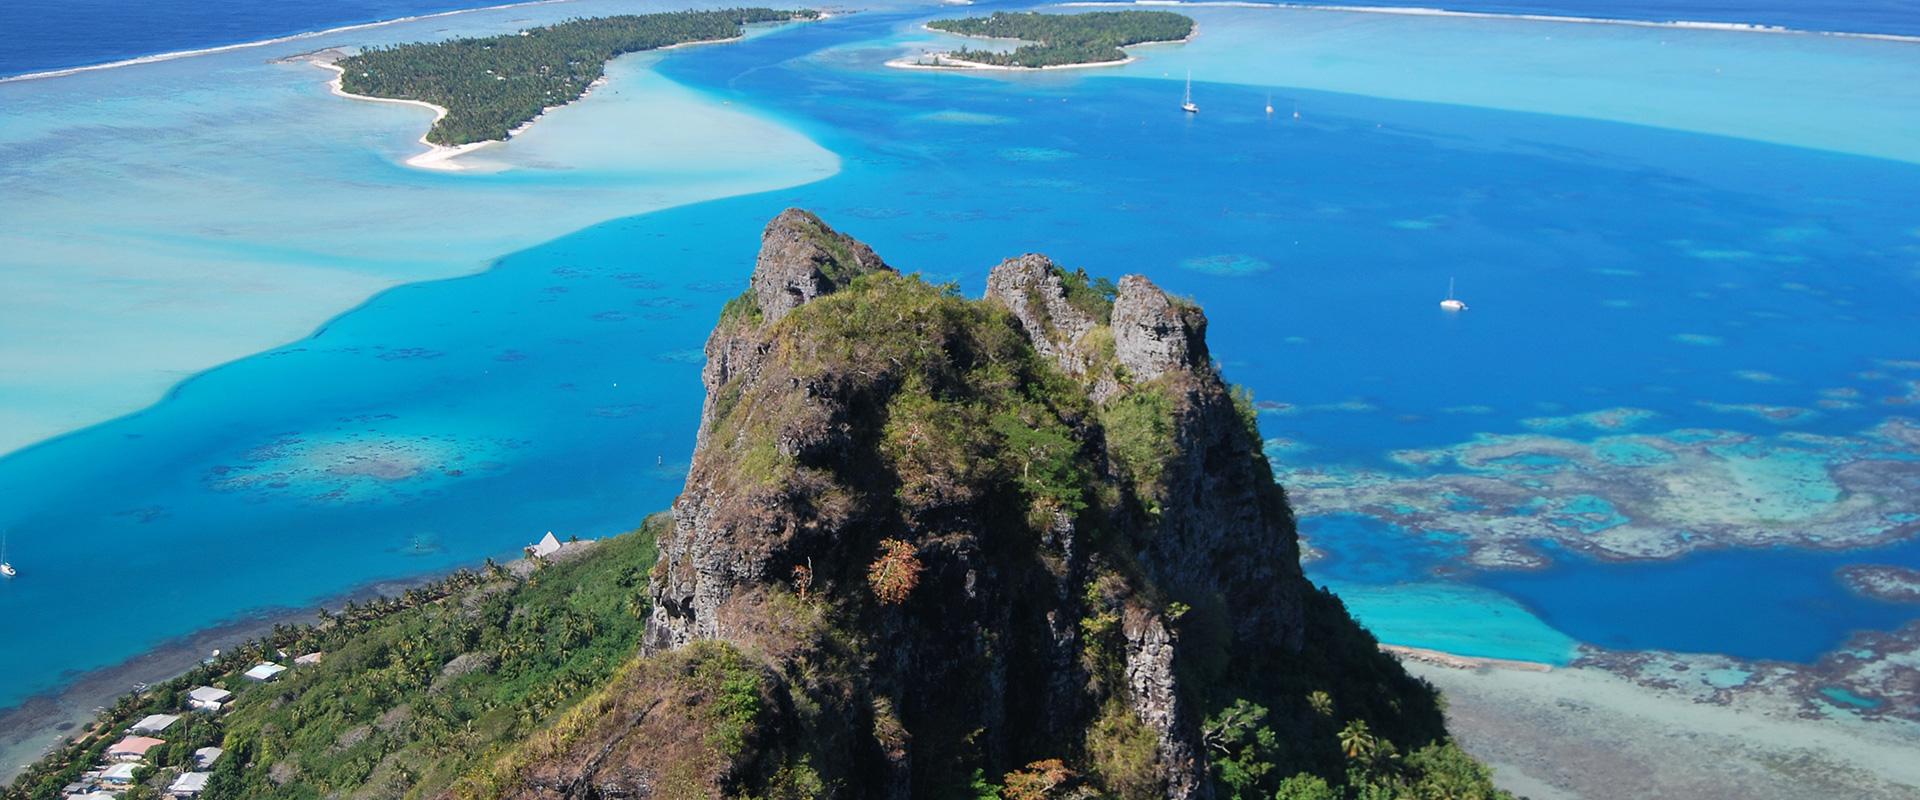 Ile de Maupiti, Polynésie française